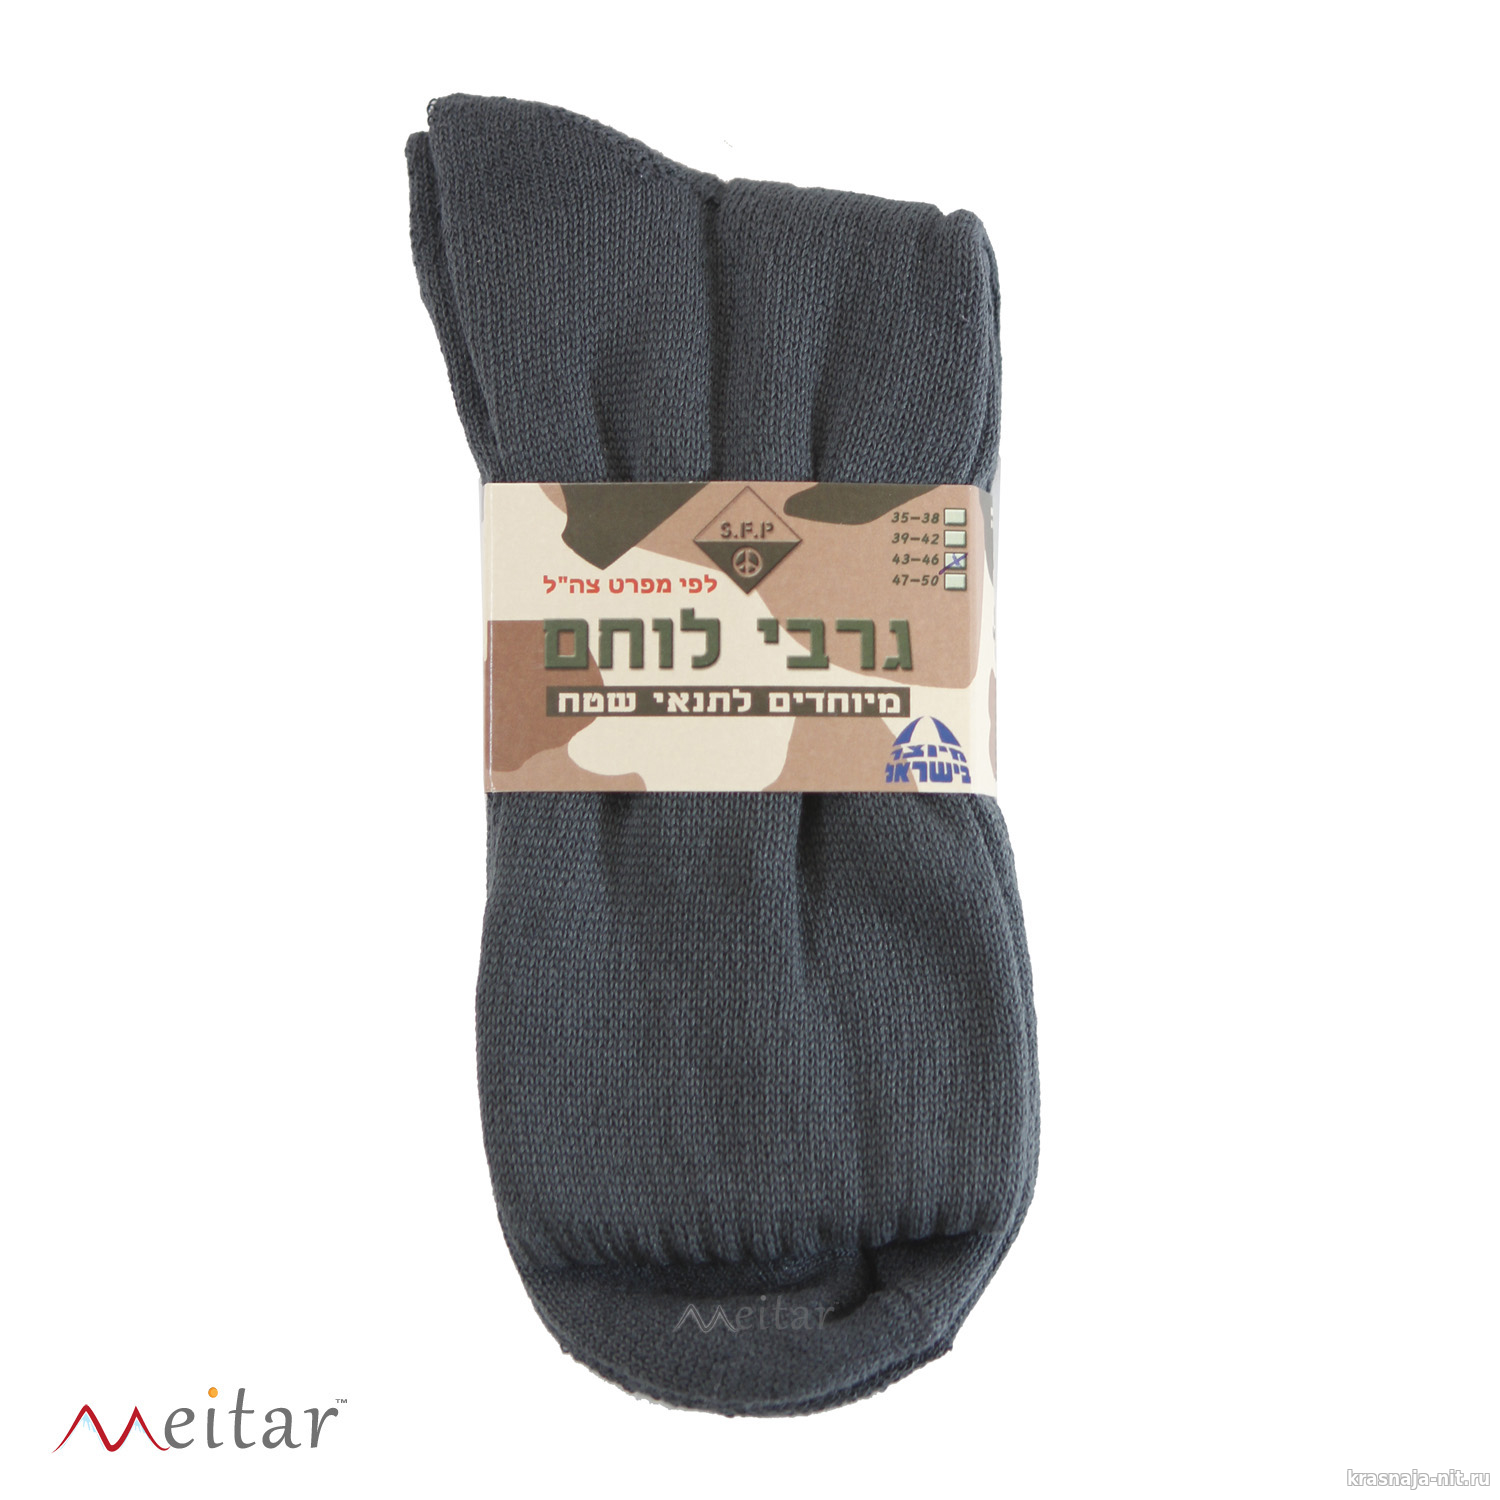 Солдатские носки - гарбаим (Израиль), Военная форма Израиля (Цахаль)